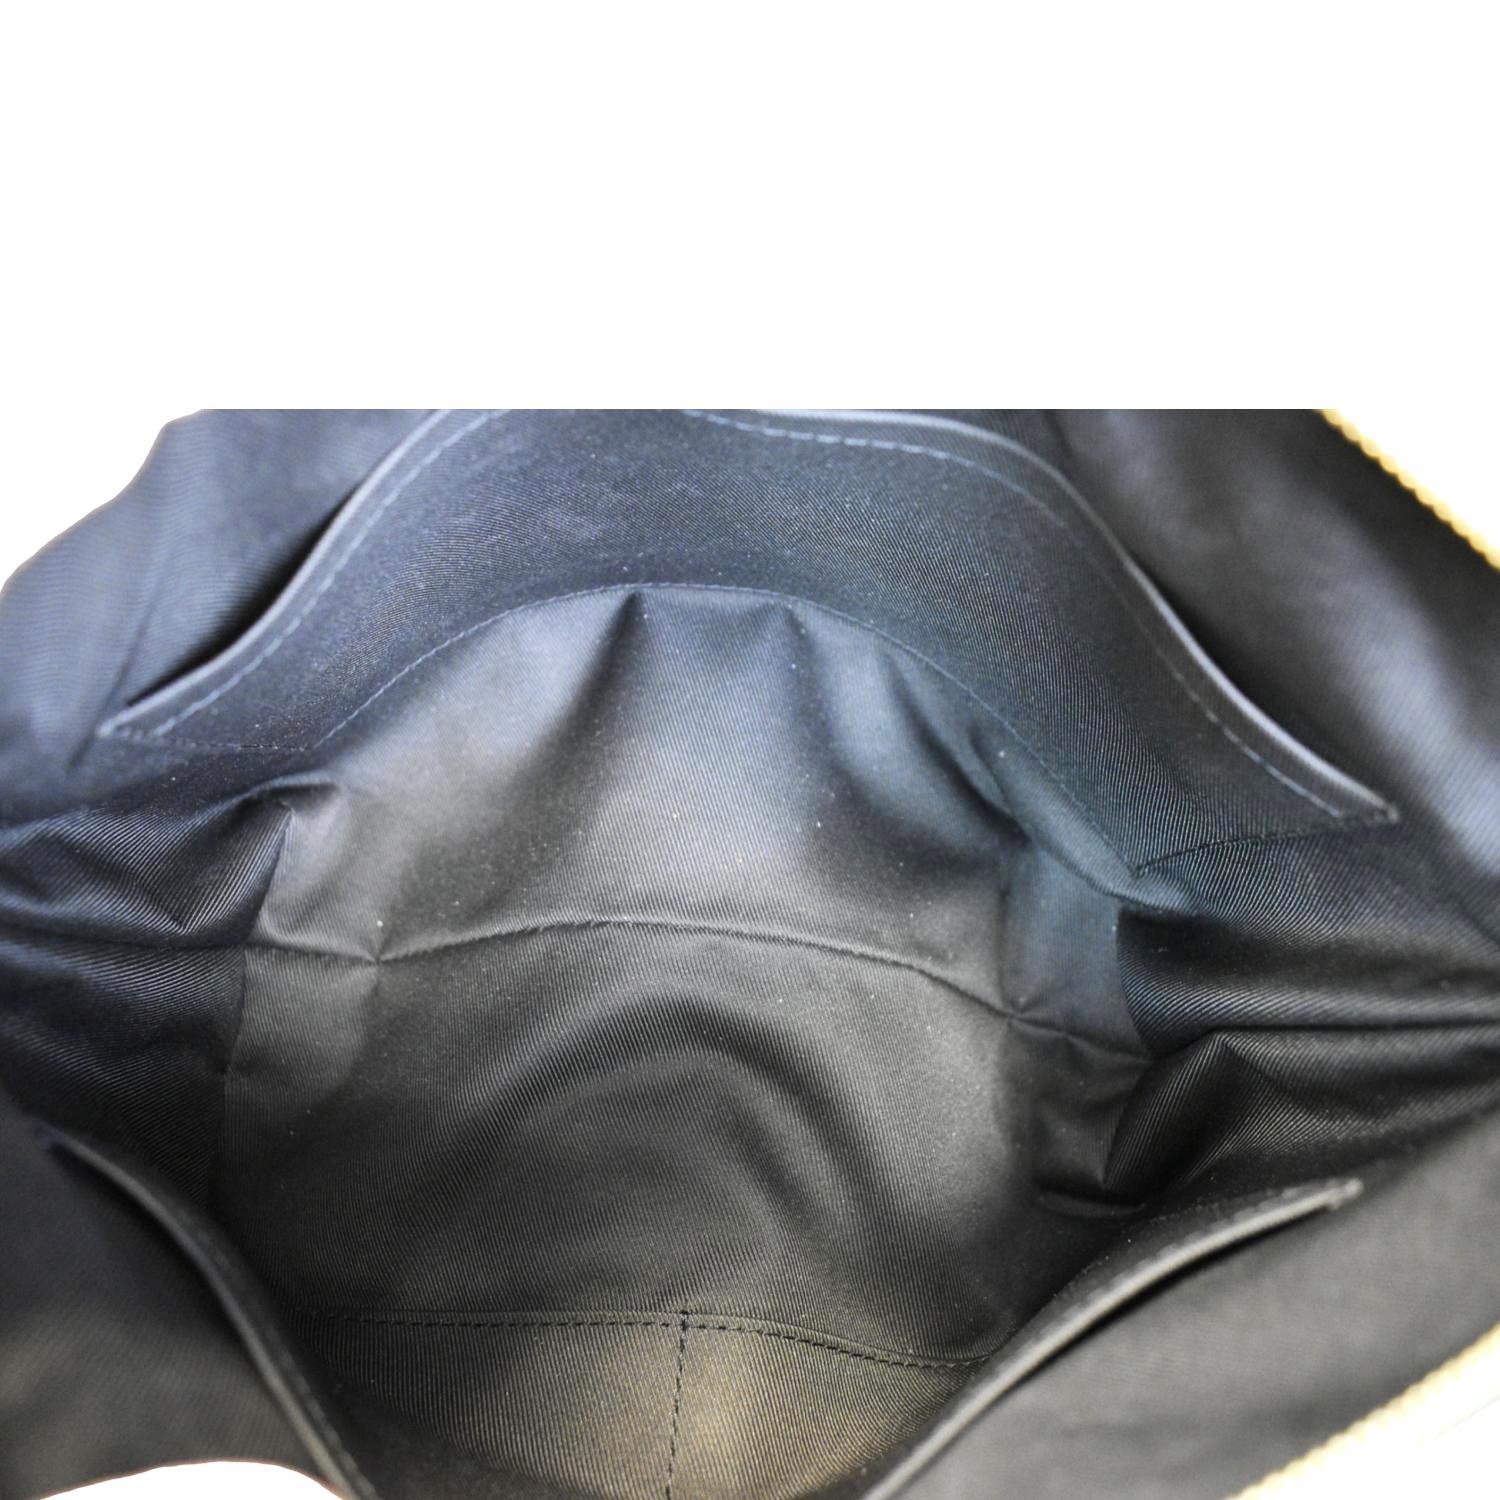 Odeon PM Shoulder Bag, Black, One Size